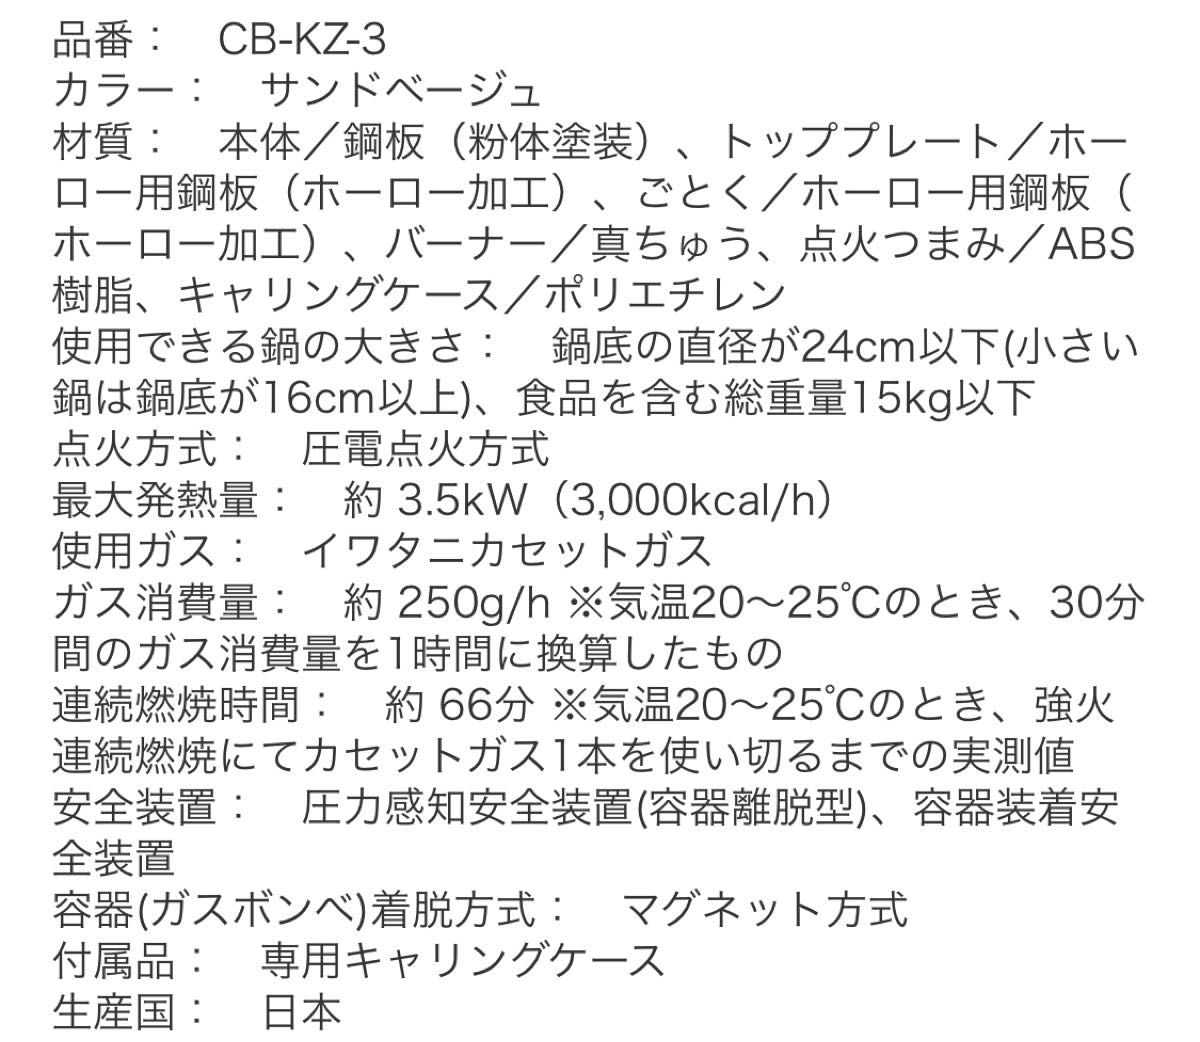 カセットフー 風まる3 イワタニ カセットコンロ / CB-KZ-3